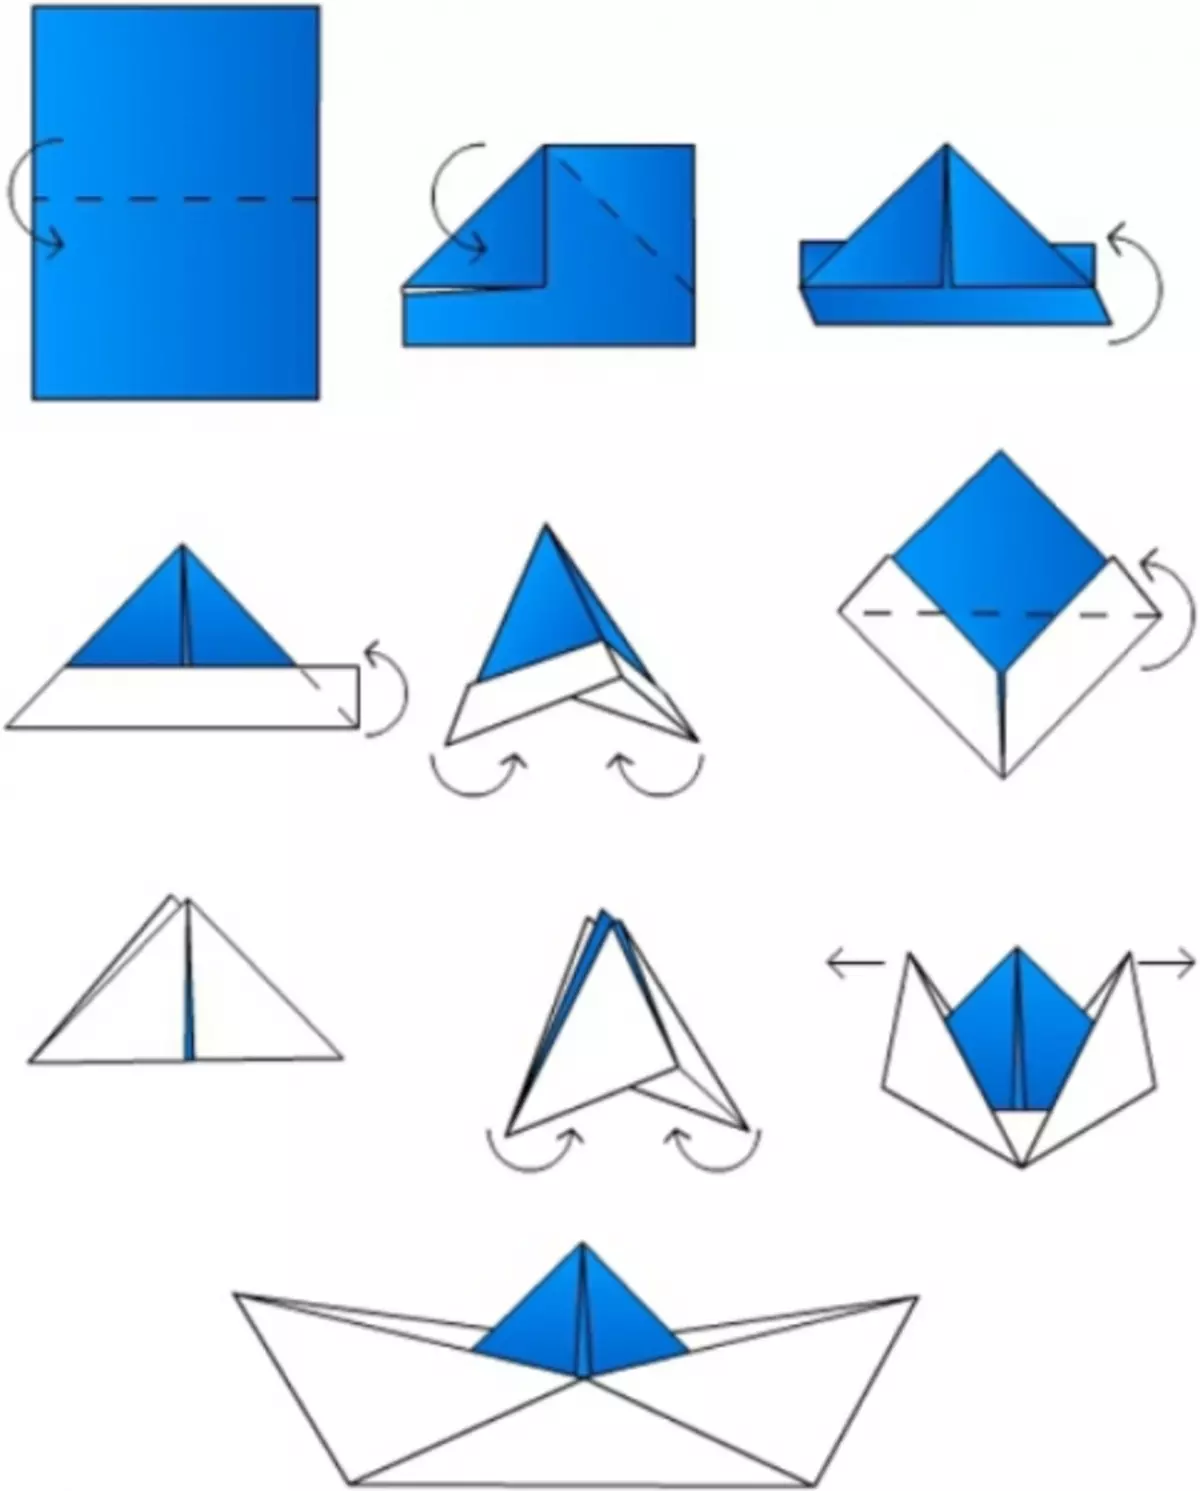 Etu esi eme mpempe akwụkwọ origami: ụgbọ mmiri, ụgbọ mmiri na Tank na vidiyo